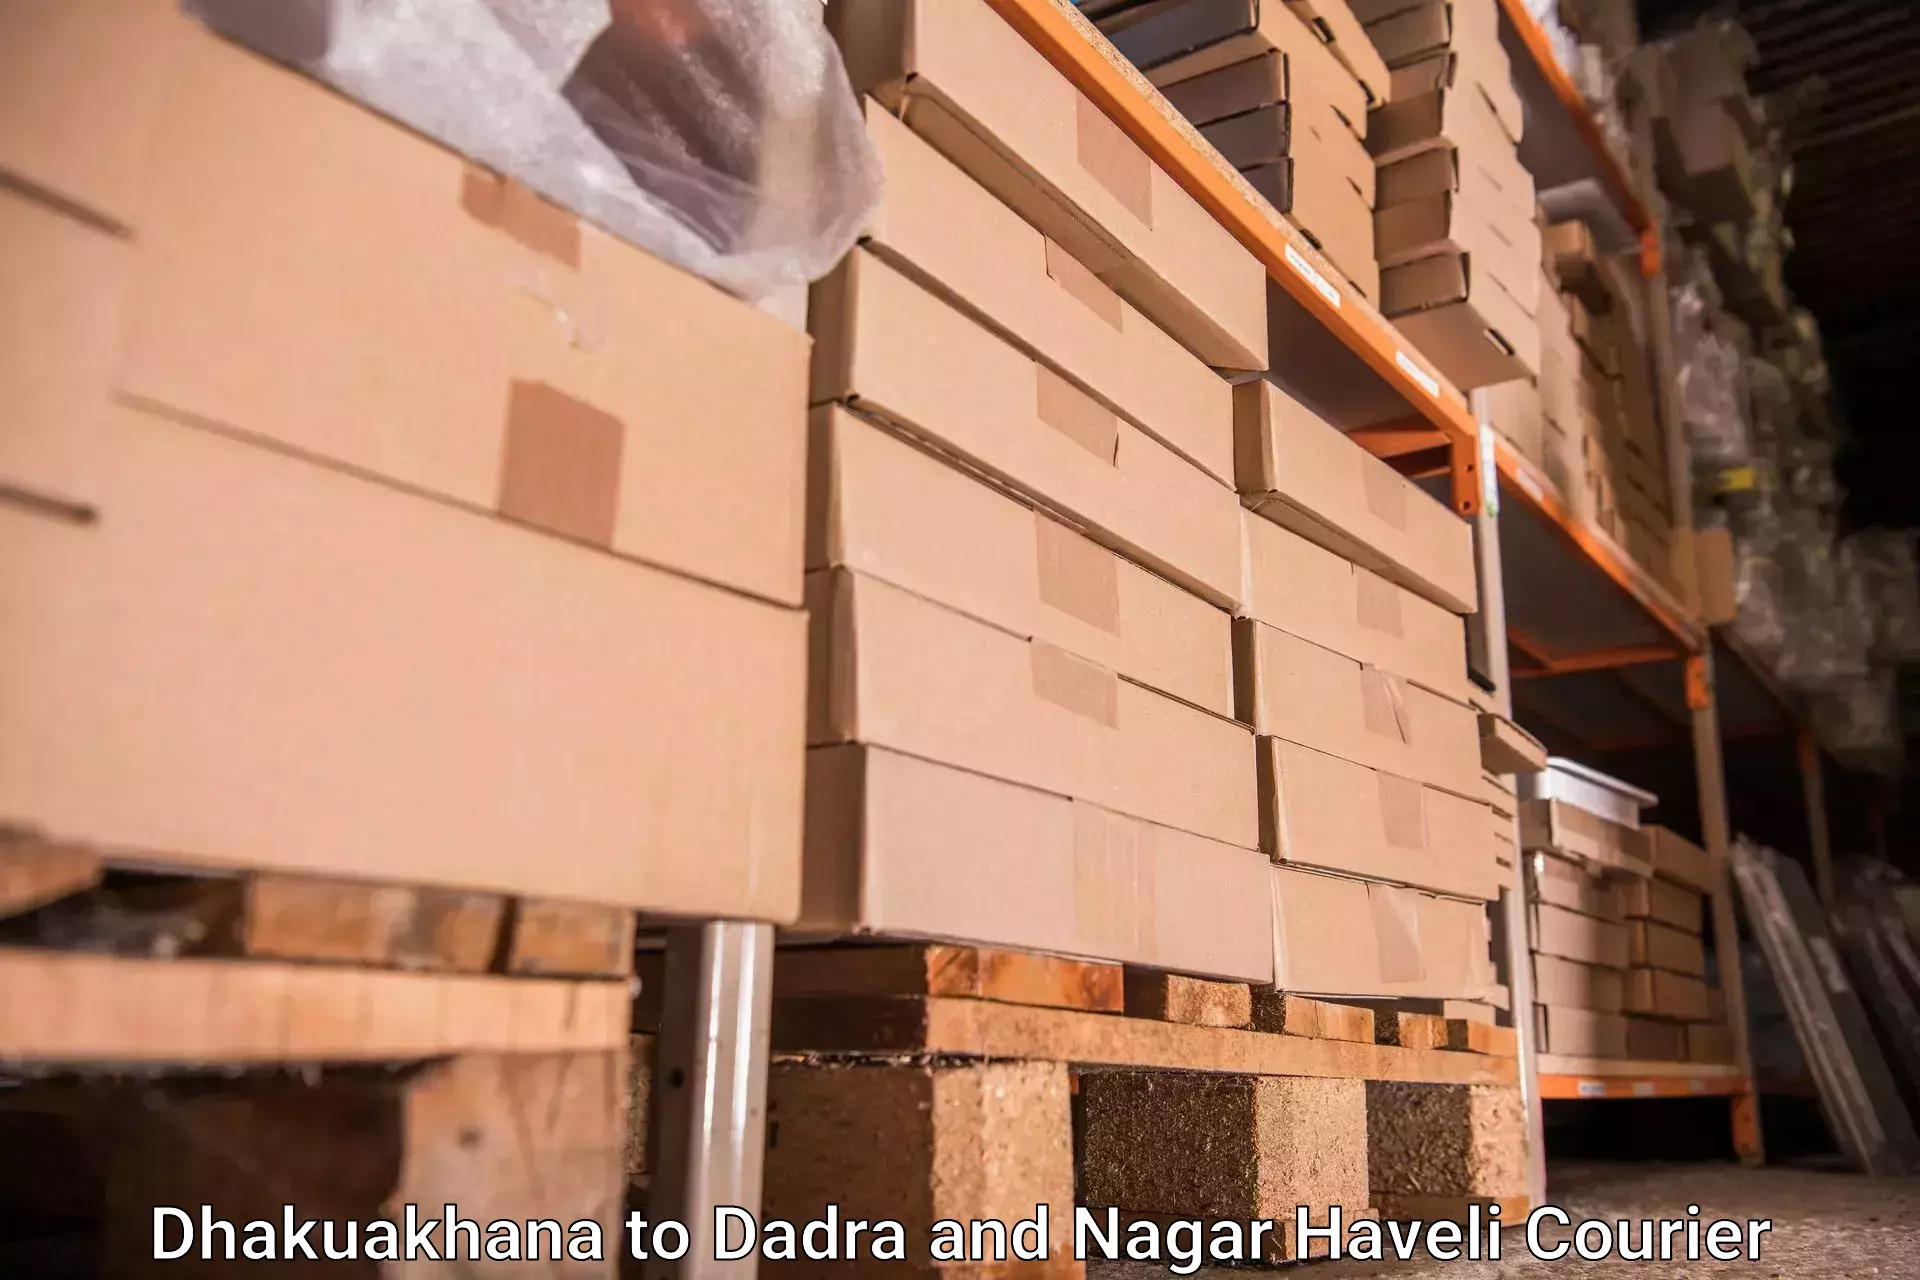 Luggage shipment specialists Dhakuakhana to Dadra and Nagar Haveli